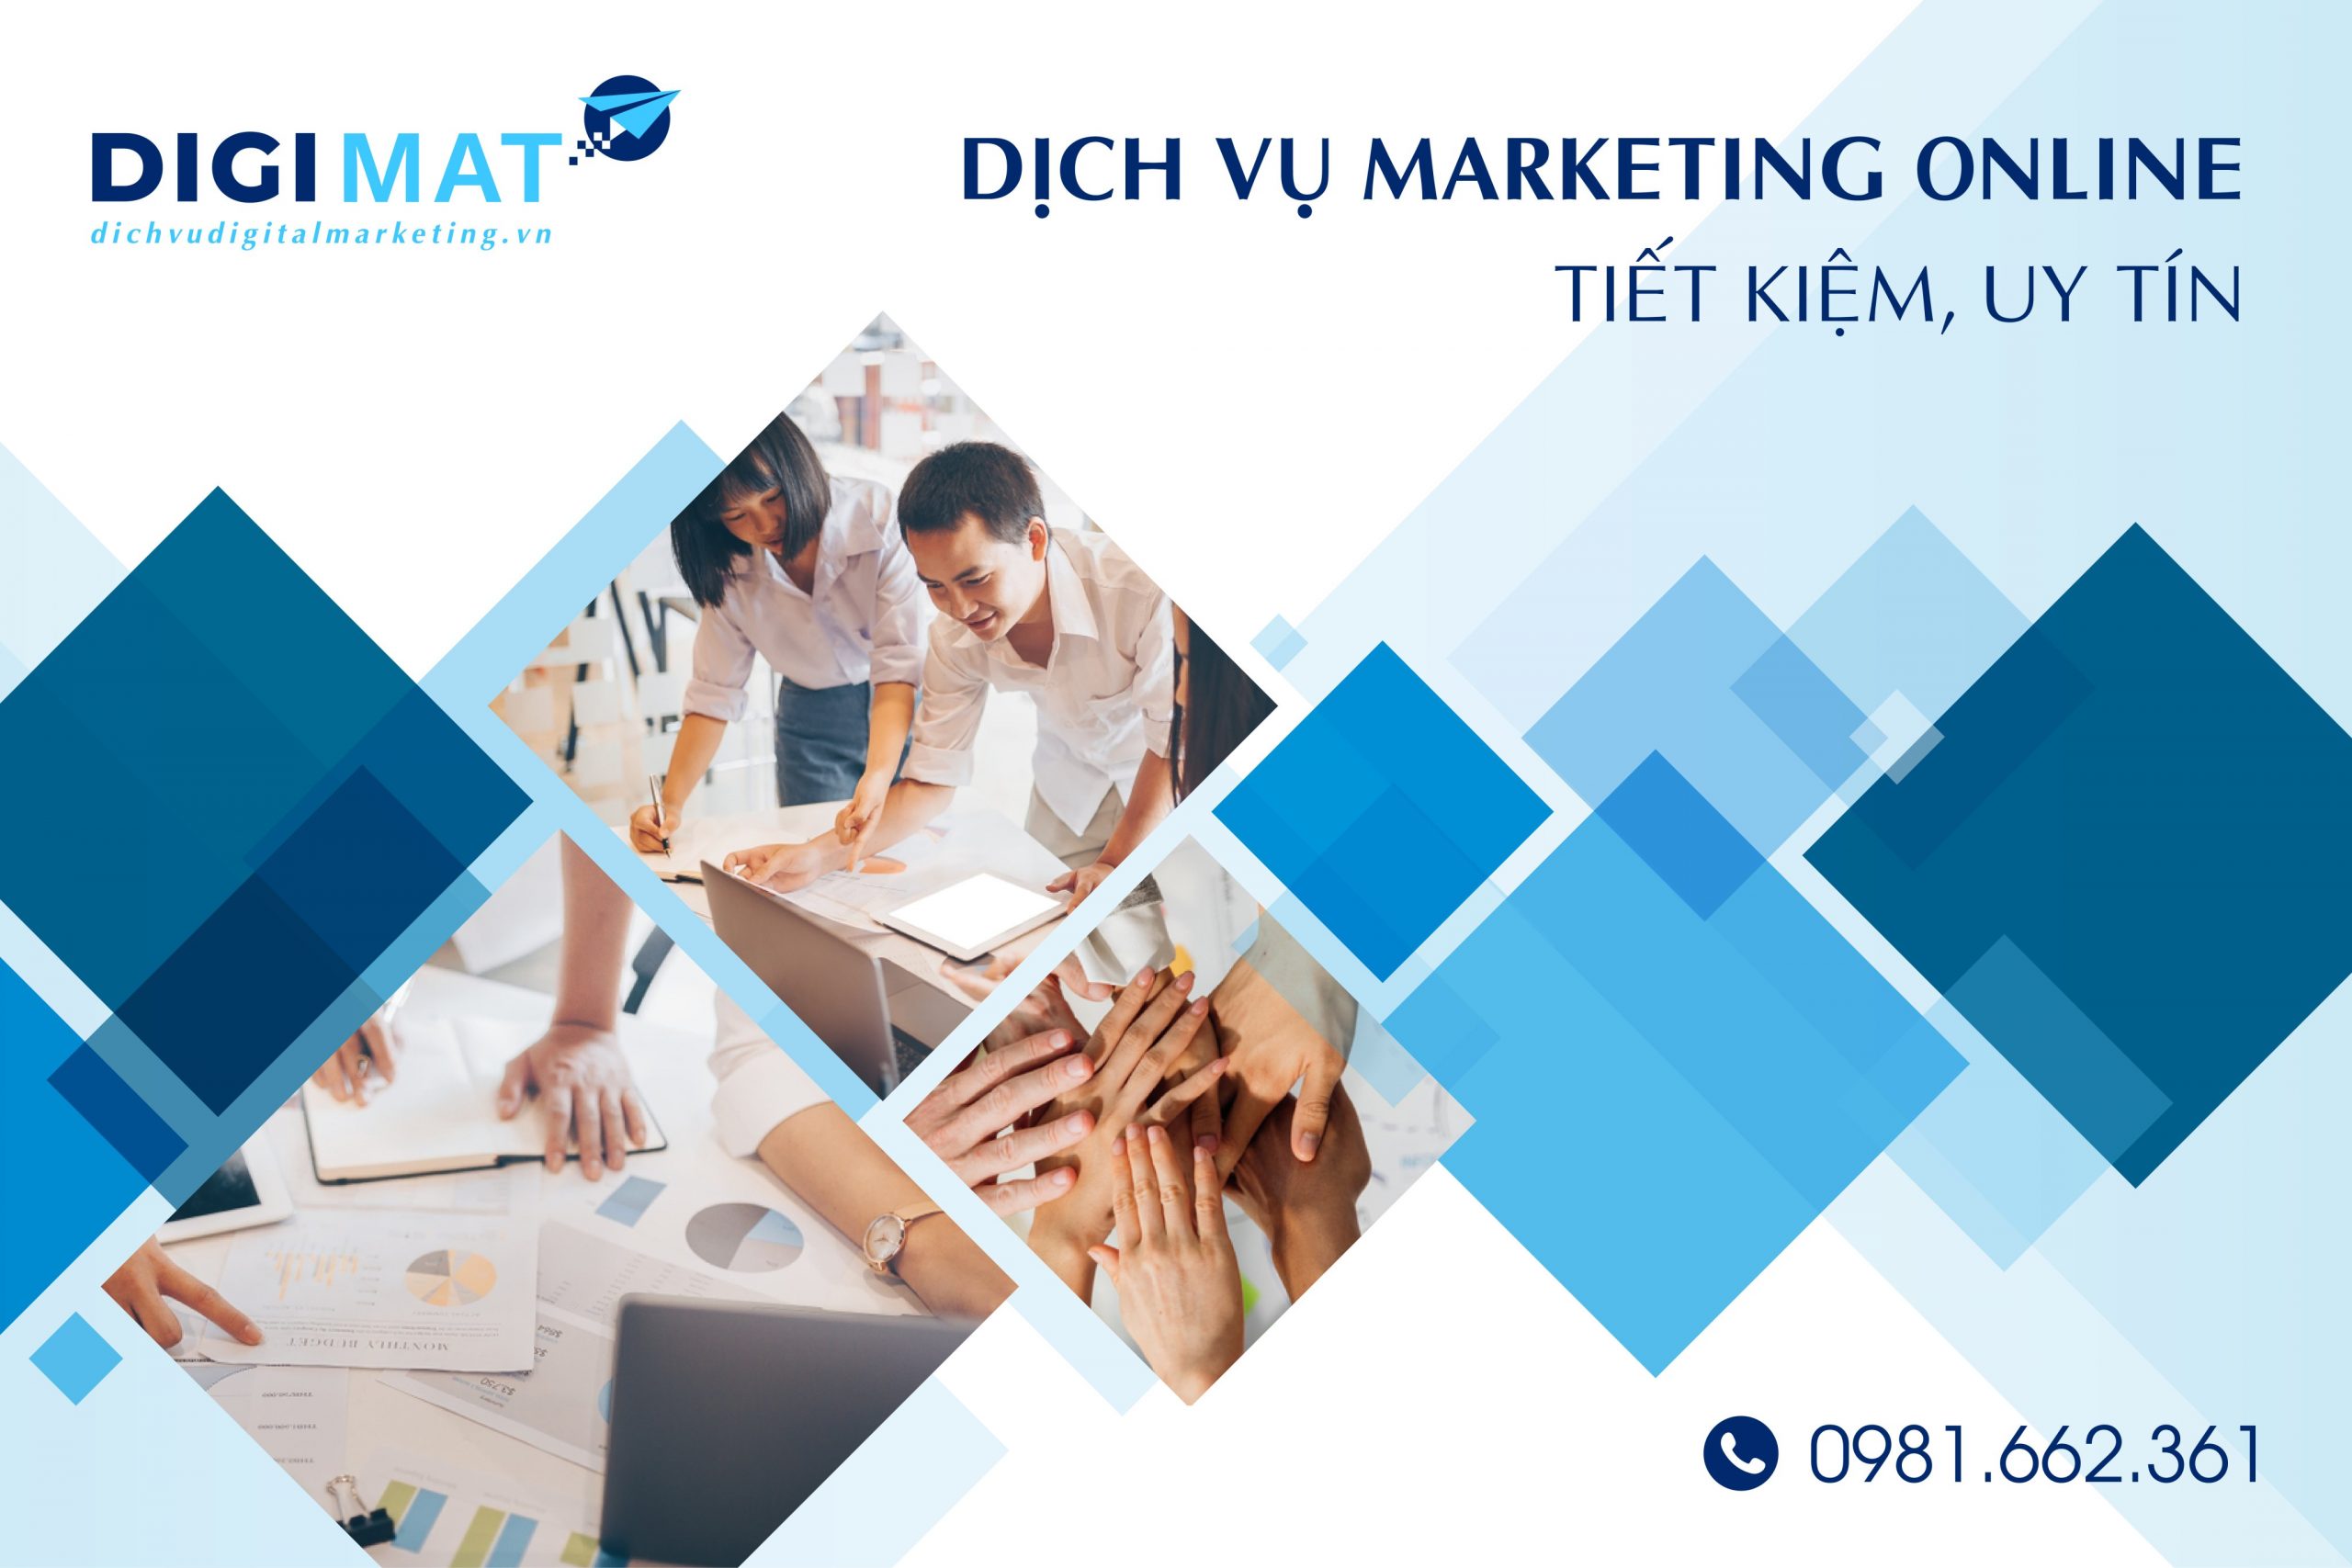 Dịch vụ marketing online giá rẻ tại Digimat